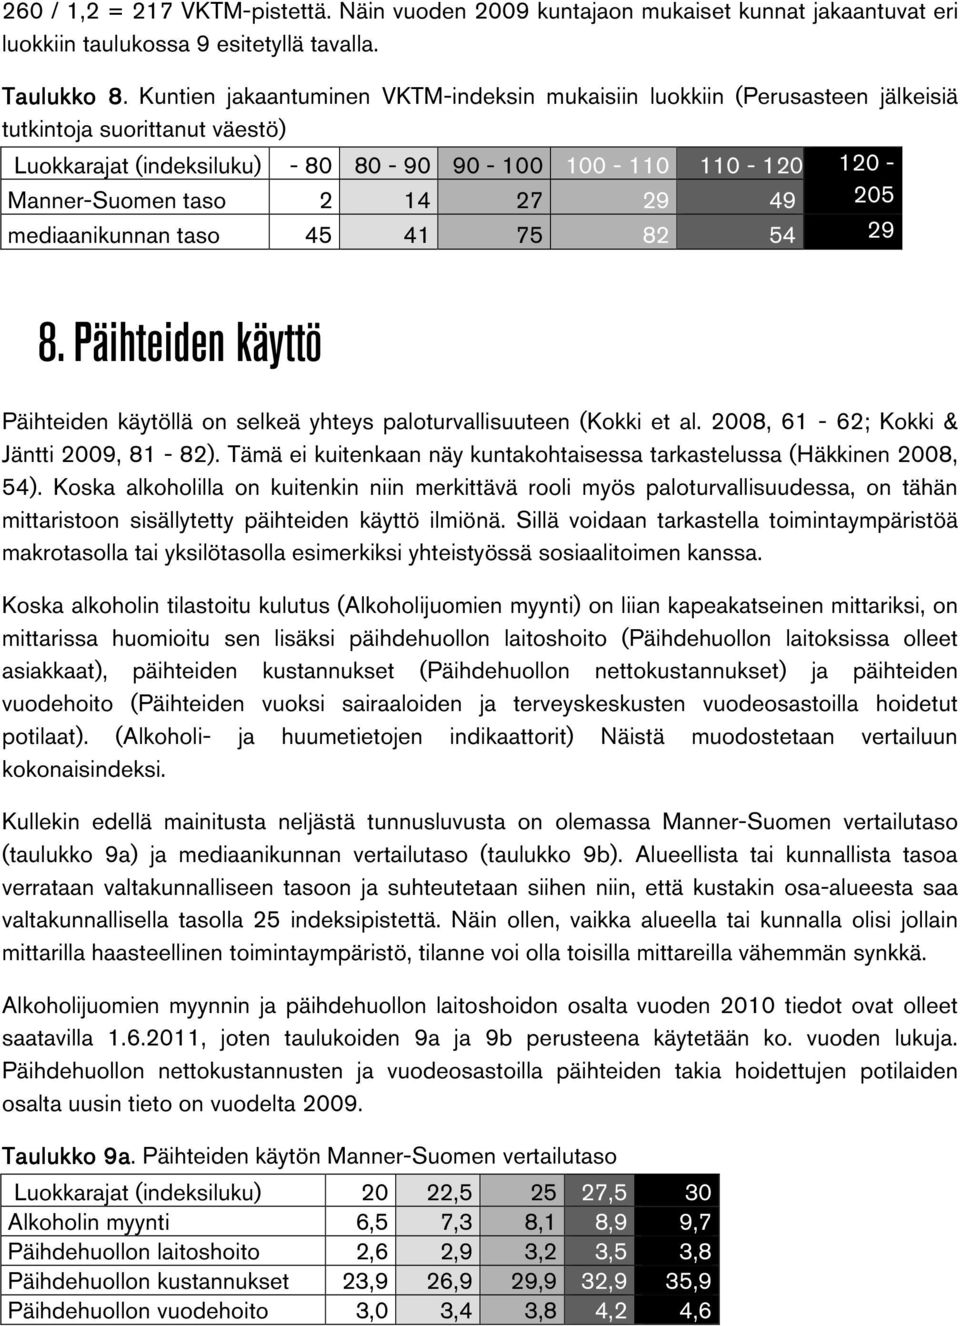 14 27 29 49 205 mediaanikunnan taso 45 41 75 82 54 29 8. Päihteiden käyttö Päihteiden käytöllä on selkeä yhteys paloturvallisuuteen (Kokki et al. 2008, 61-62; Kokki & Jäntti 2009, 81-82).